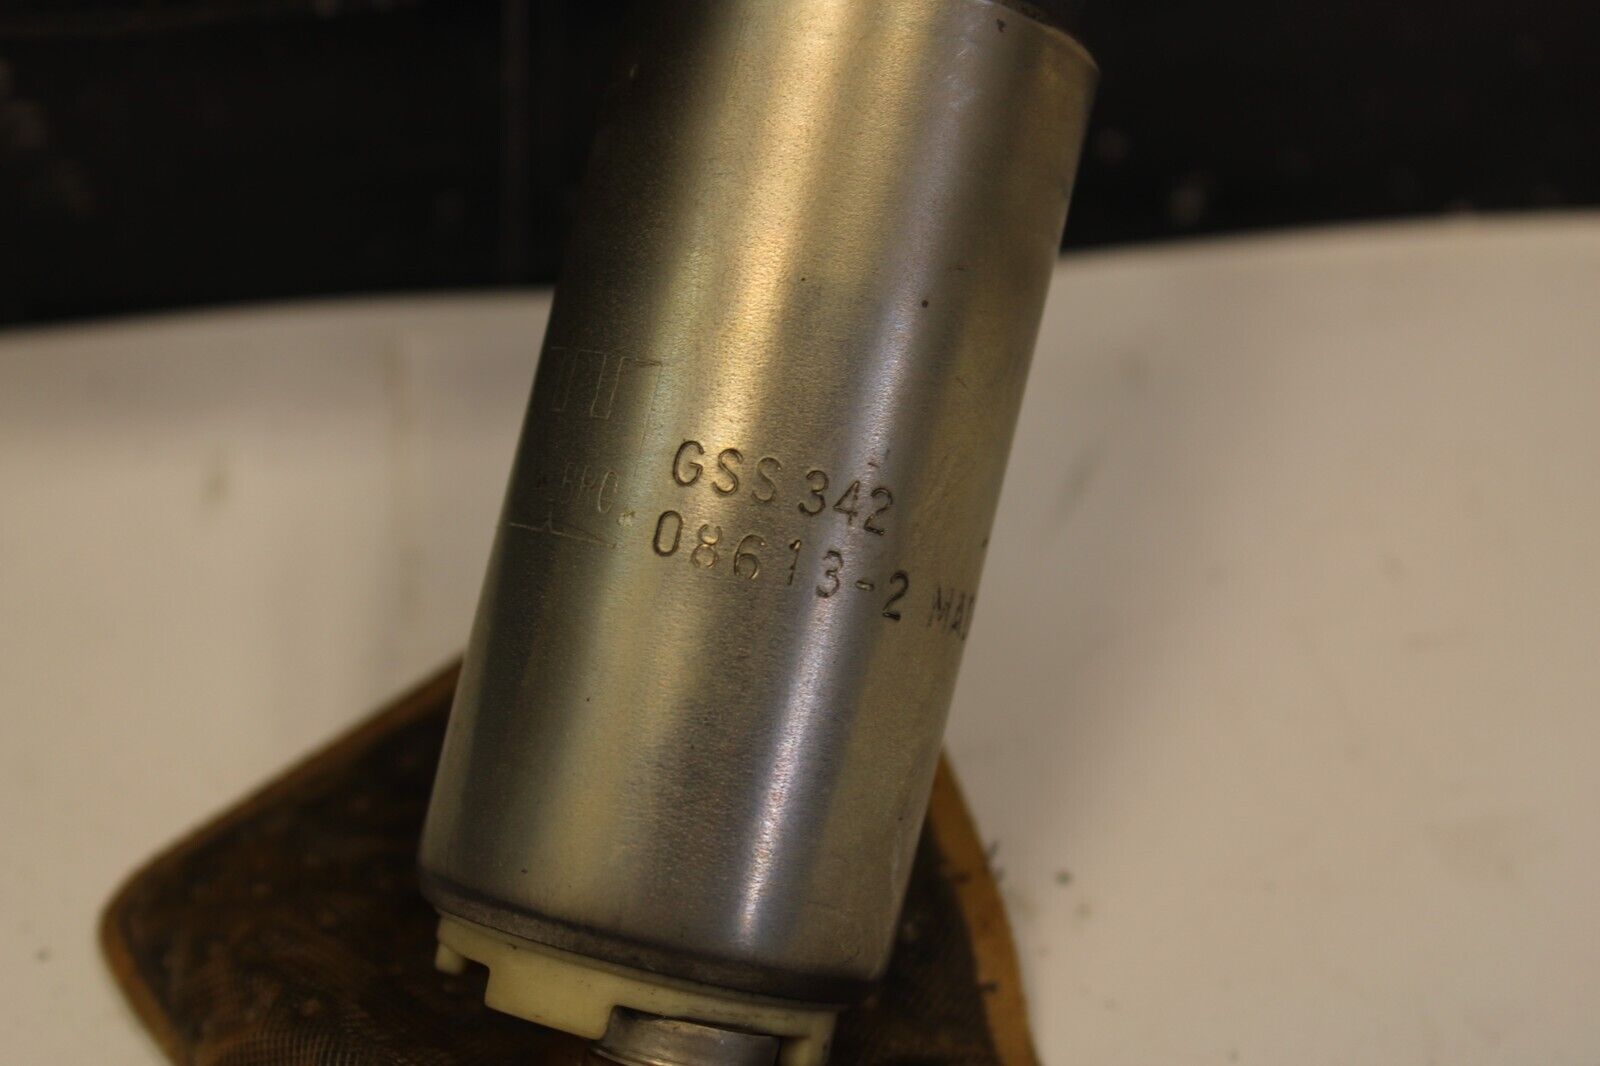 Walbro GSS342 Fuel Pump